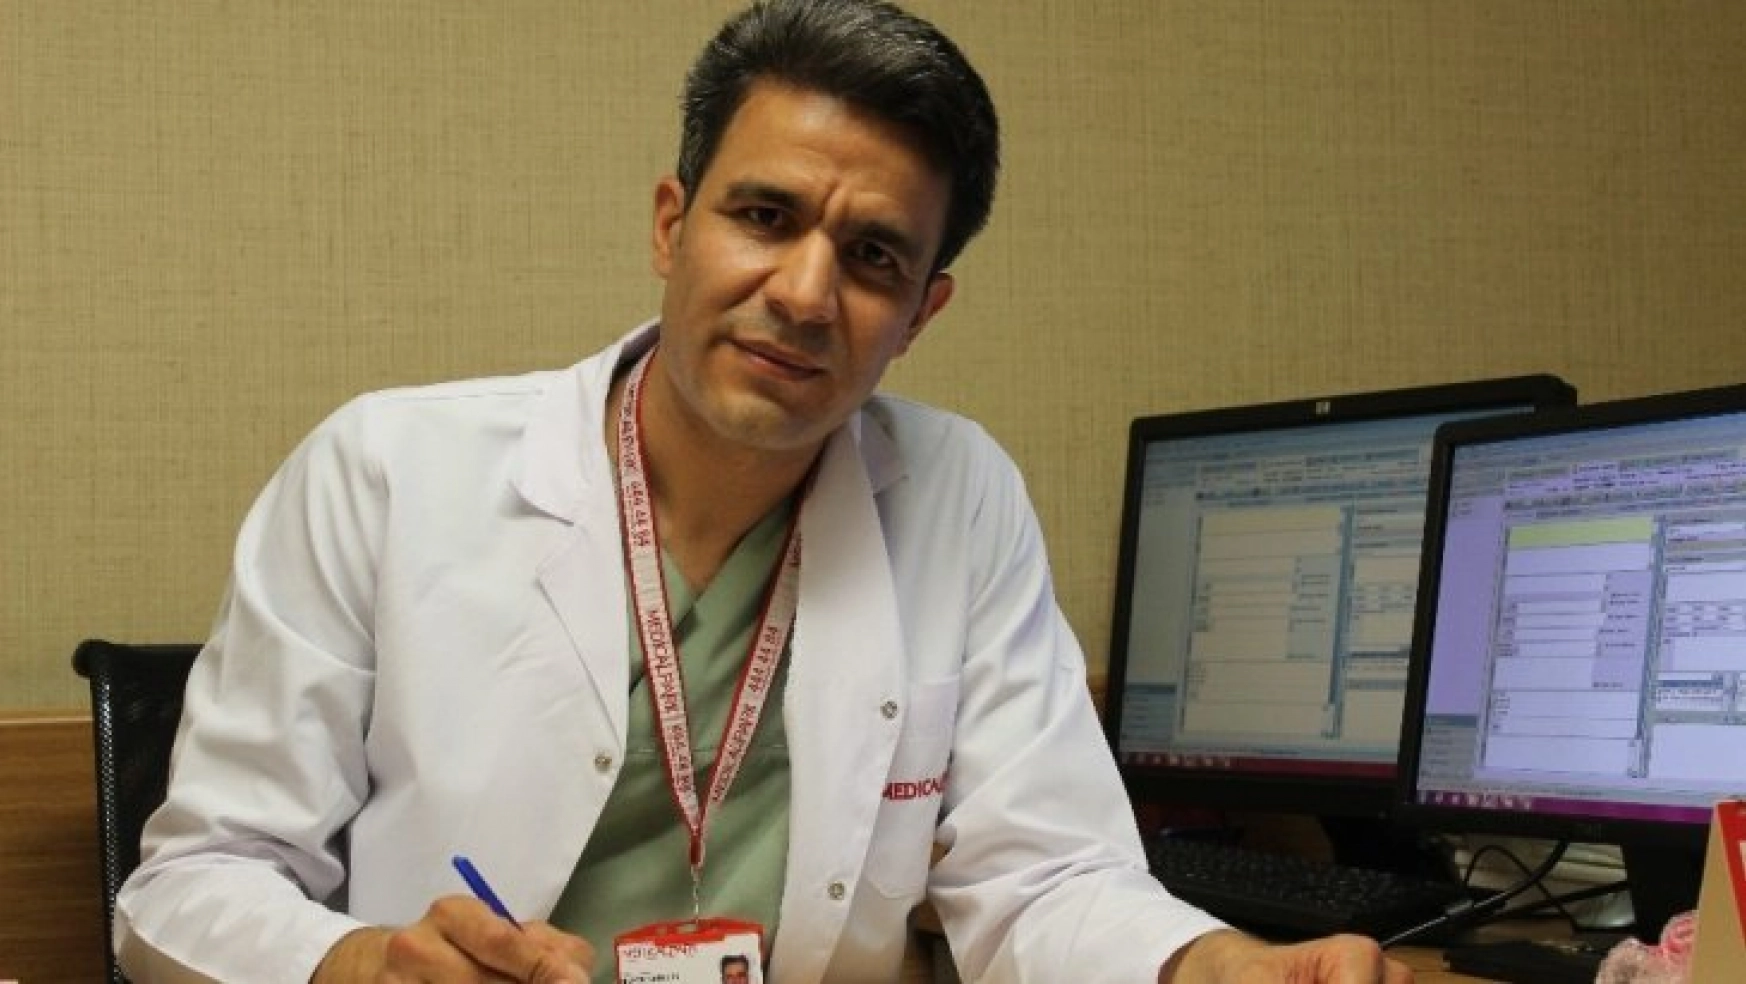 Dr. Sarıcık'Erken tanı ile kanser korkulu rüyamız olmaktan çıkar'